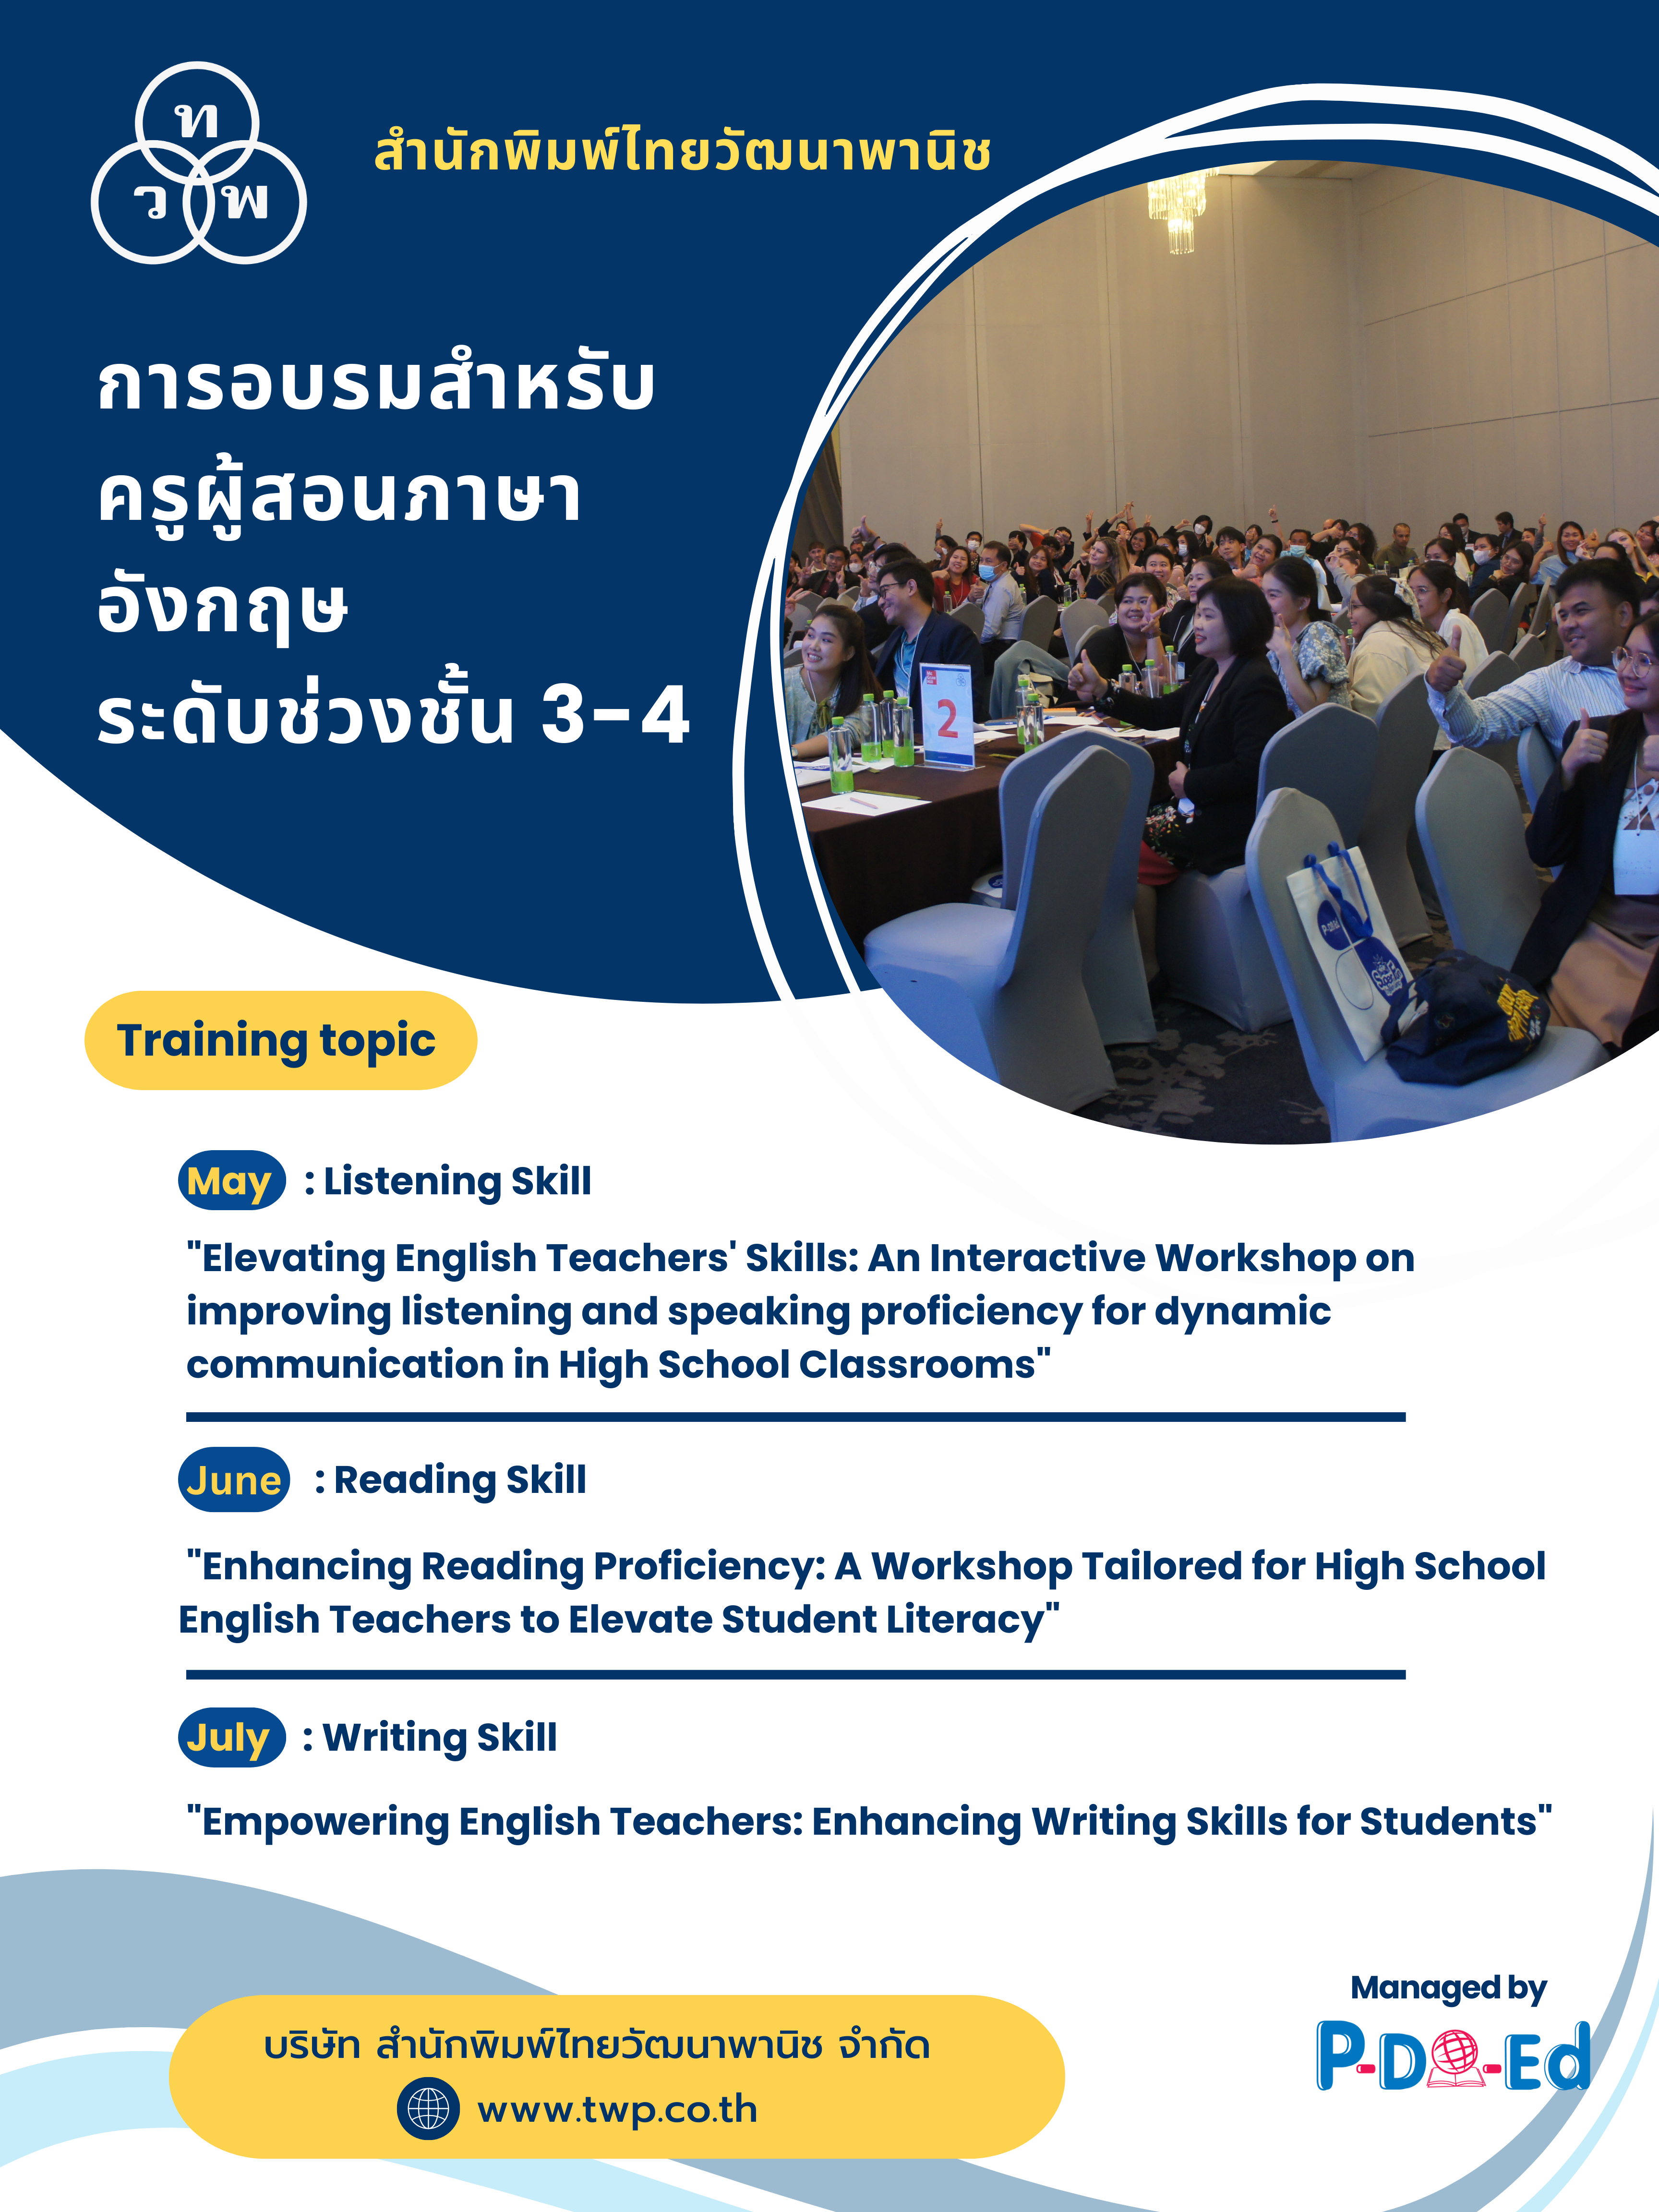 สำนักพิมพ์ไทยวัฒนาพานิช จัดงานอบรมสำหรับครูผู้สอนภาษาอังกฤษระดับมัธยมศึกษา (ช่วงชั้นที่3-4)